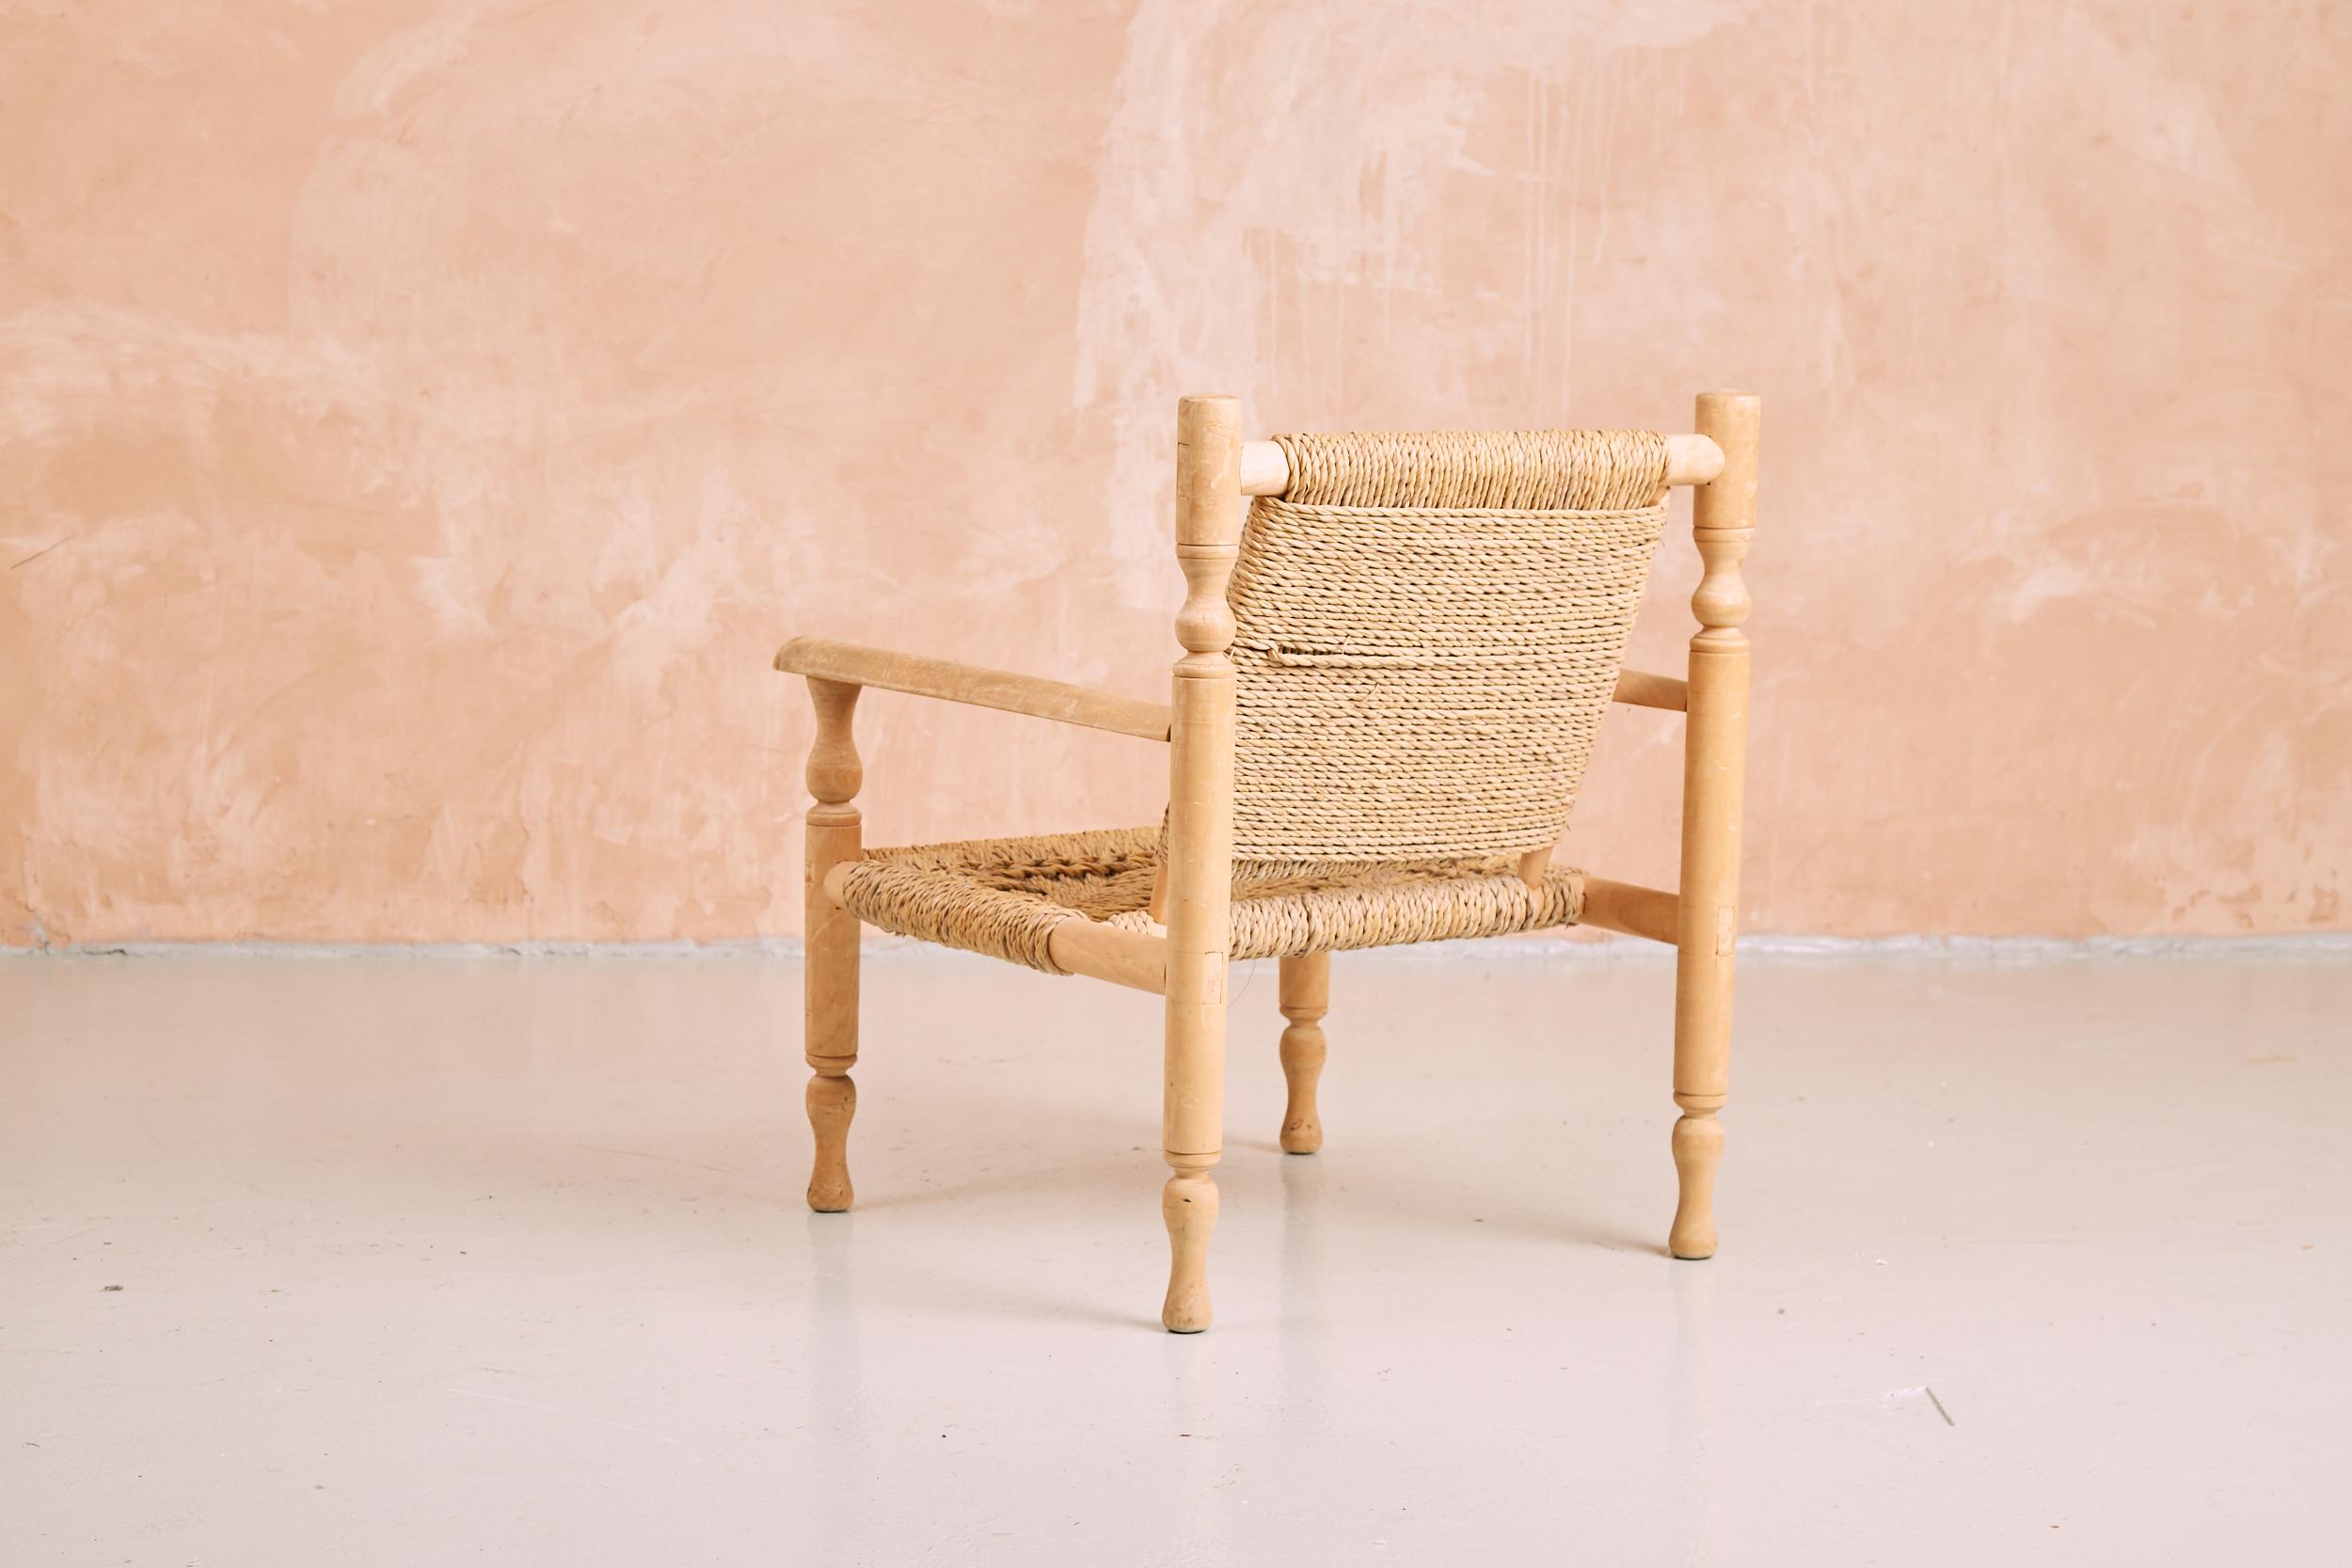 Rare fauteuil Audoux Minet en pin et osier, fabriqué à la main. Classique français vintage, cette chaise a été conçue par Adrien Audoux et Frida Minet au milieu du siècle dernier. Extrêmement confortable, il apporte une touche rustique dans un